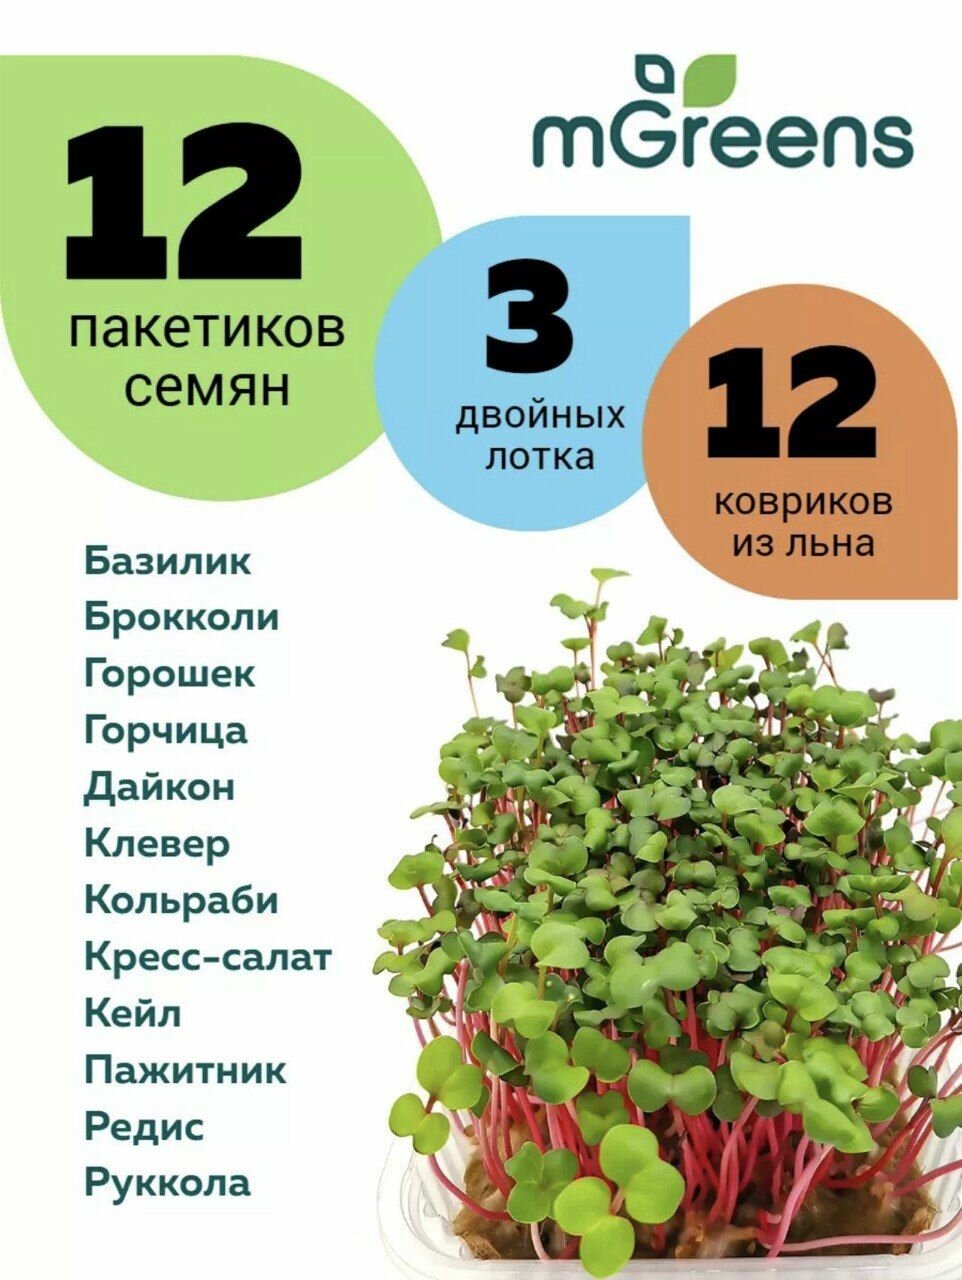 12 пакетиков семян микрозелени + 12 ковриков + 3 лотка